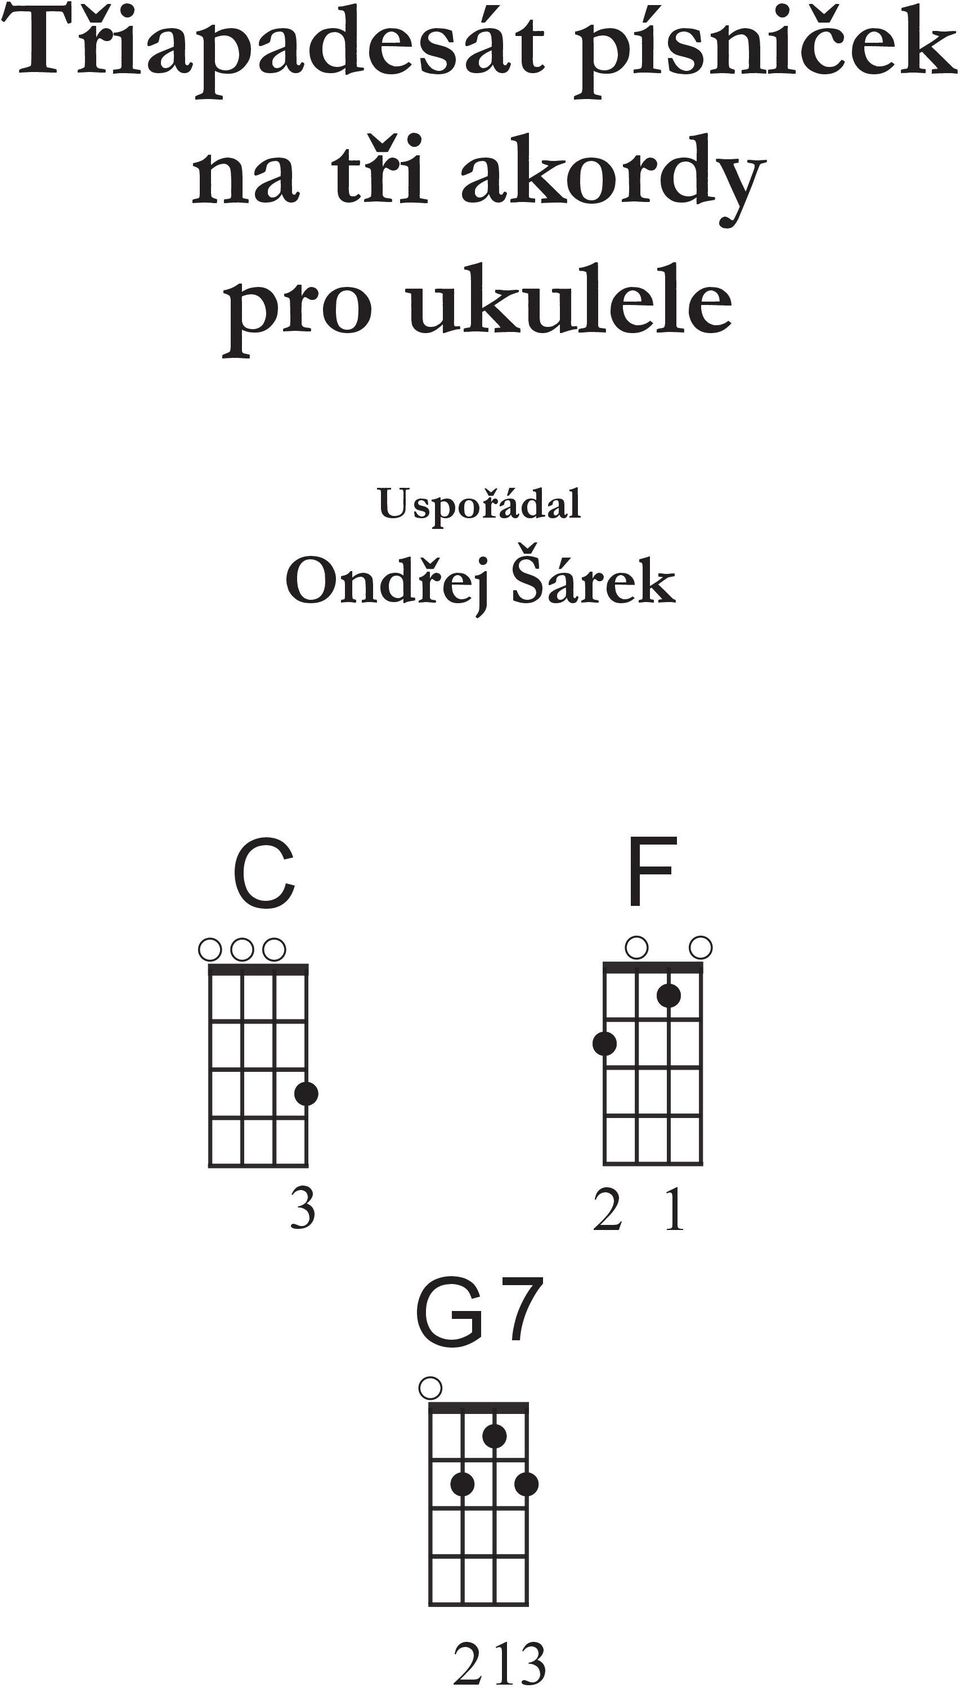 akordy pro ukulele